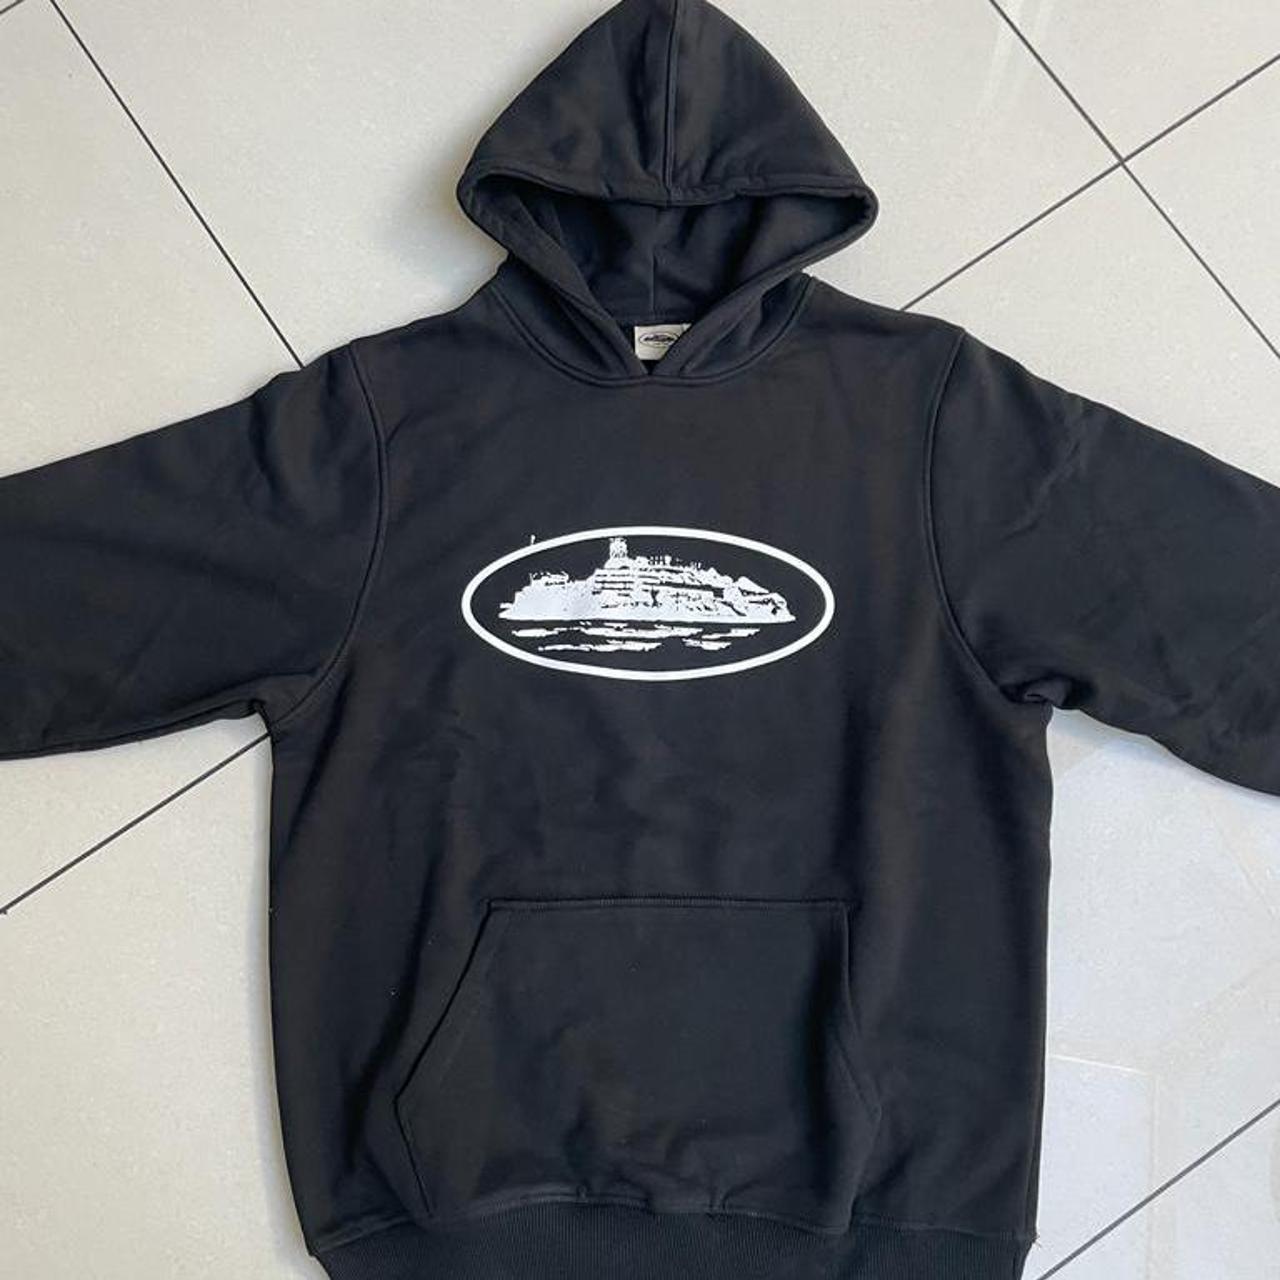 Cortiez RTW Alcatraz hoodie - black /white Brand... - Depop